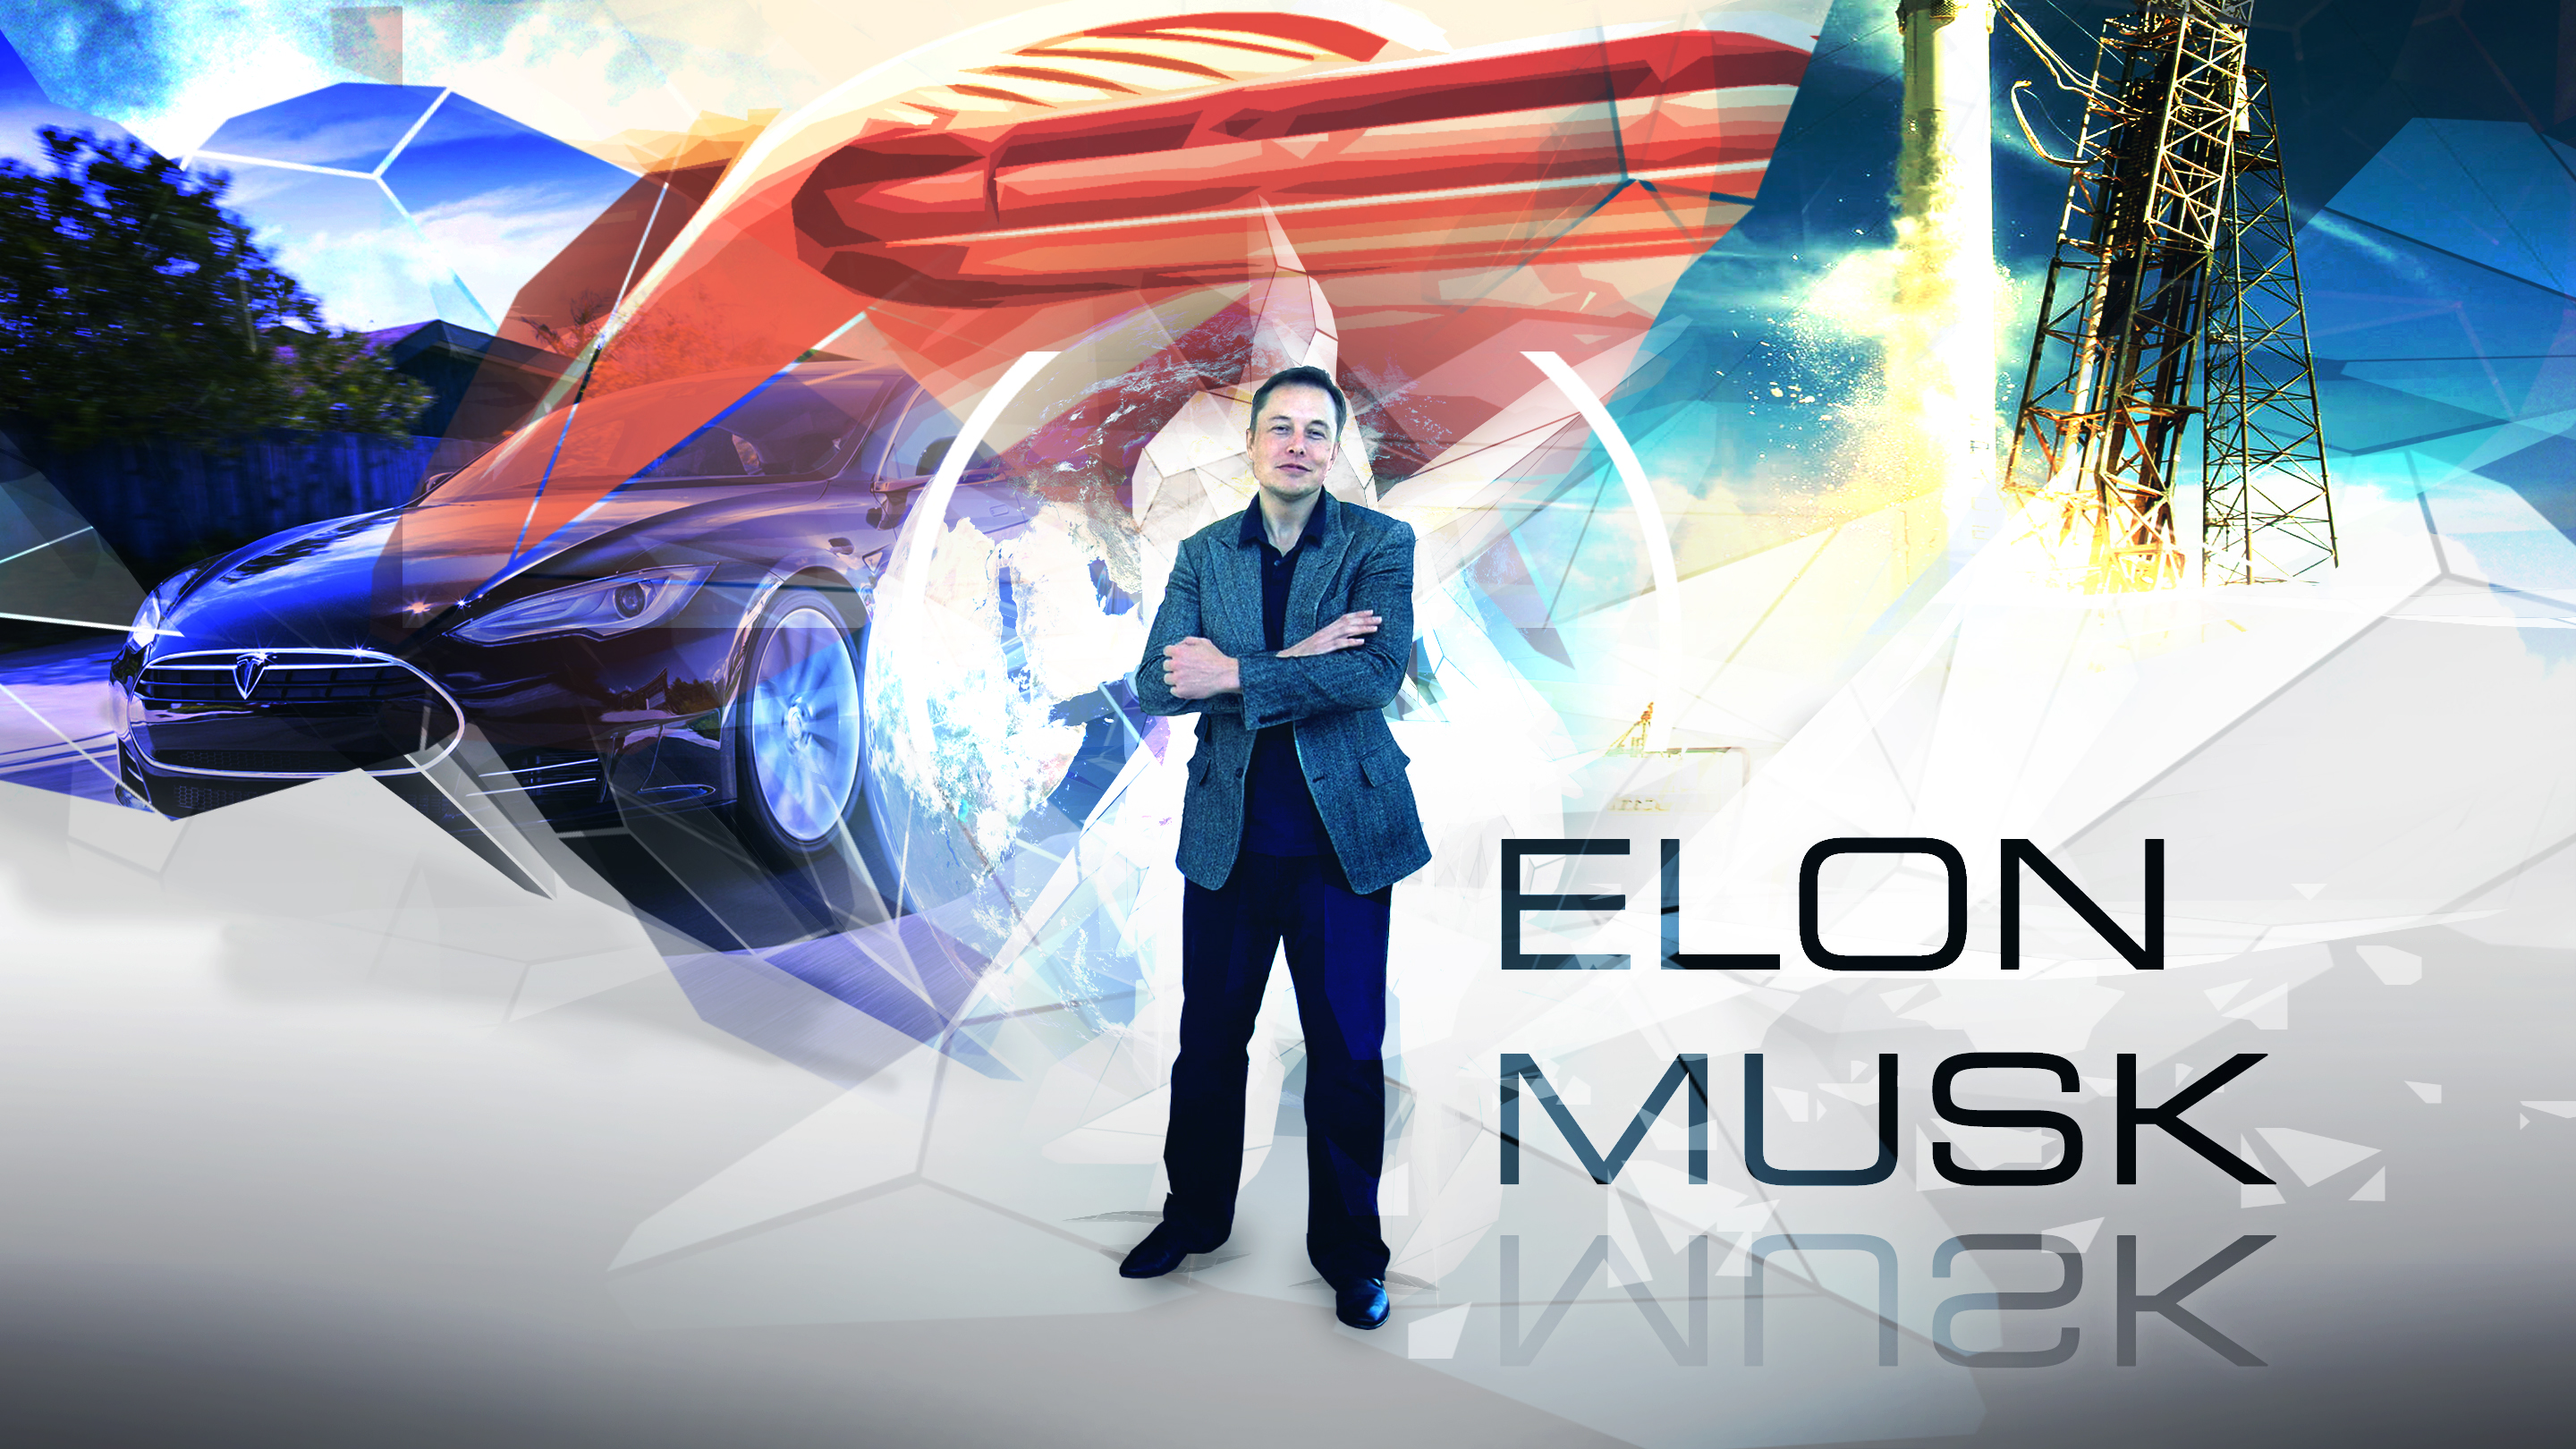 Elon Musk wallpaper 16:9 by Klamek97 on DeviantArt